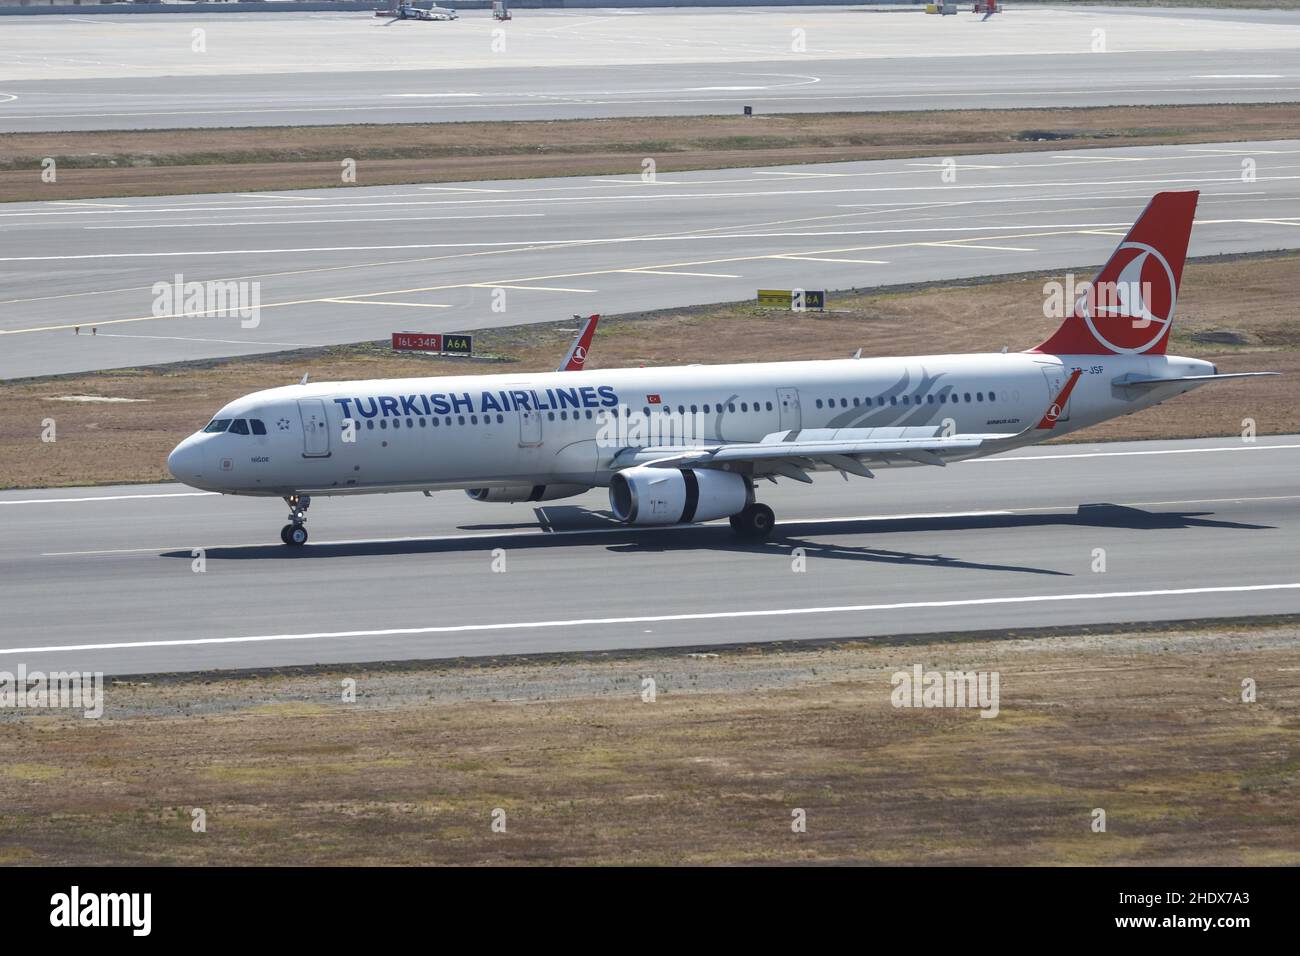 ESTAMBUL, TURQUÍA - 14 DE AGOSTO de 2021: Turkish Airlines Airbus 321-231 (CN 5465) con destino al aeropuerto de Estambul. Foto de stock